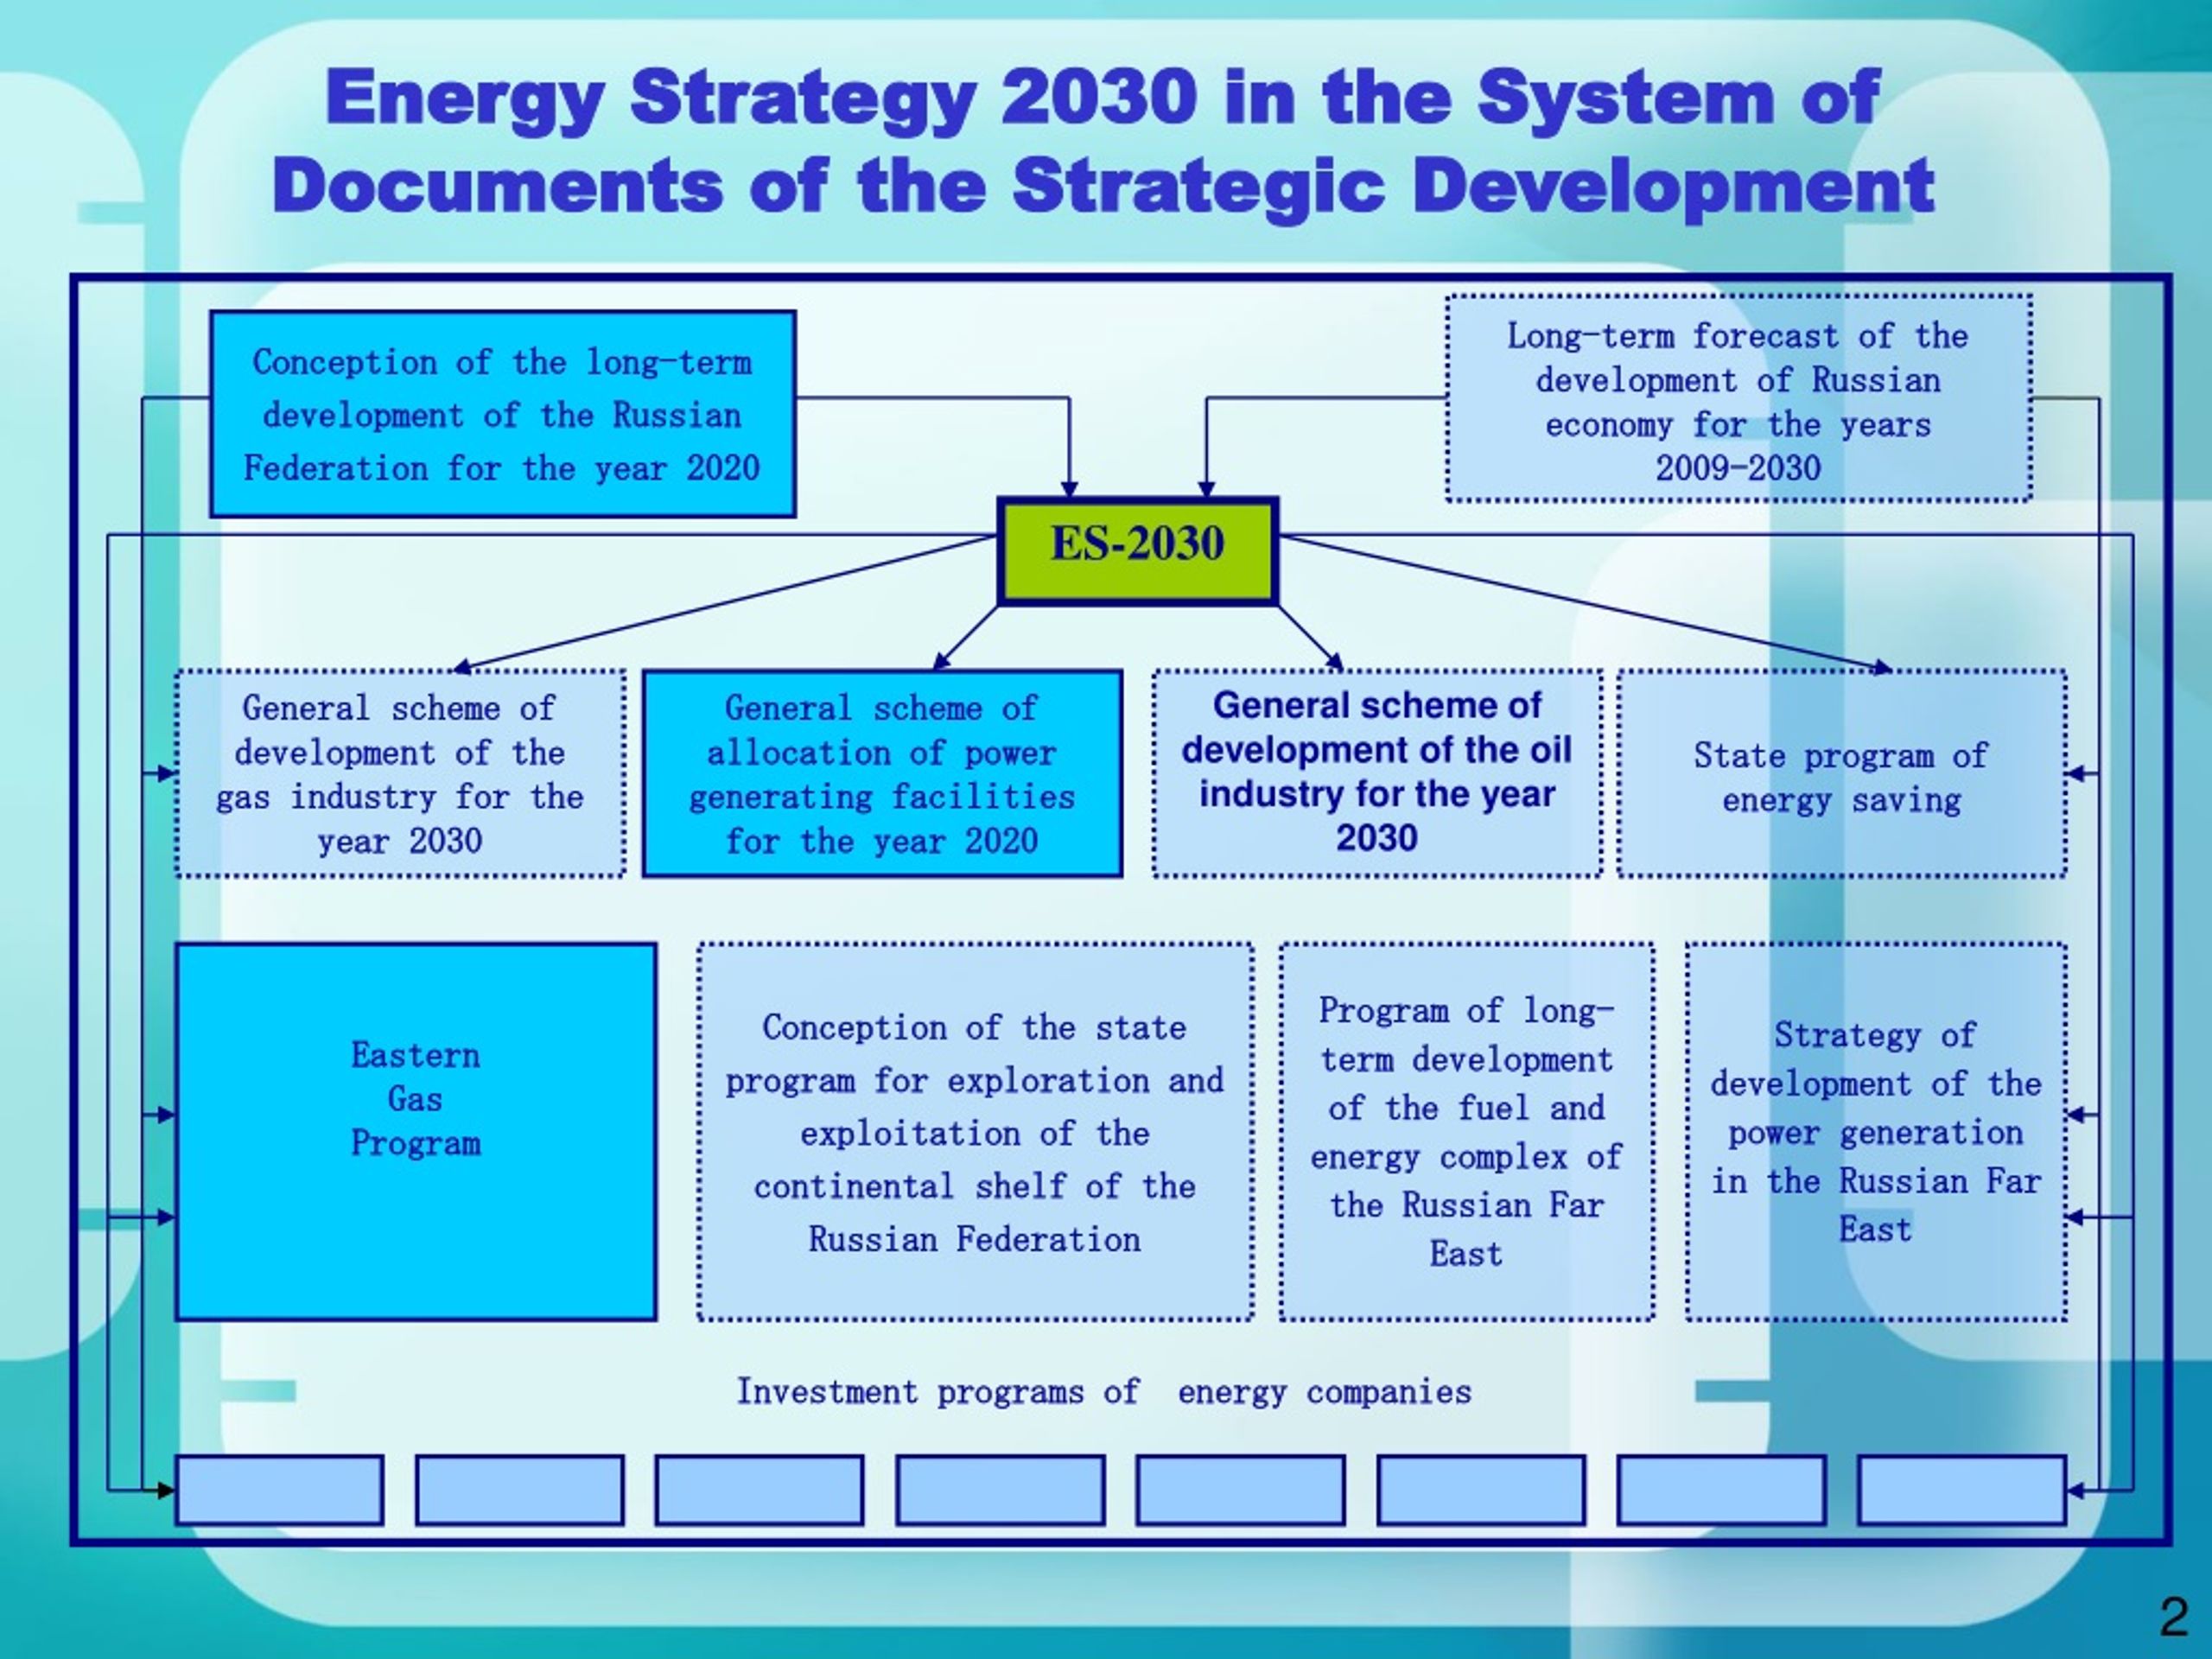 Стратегия 2030 предполагает